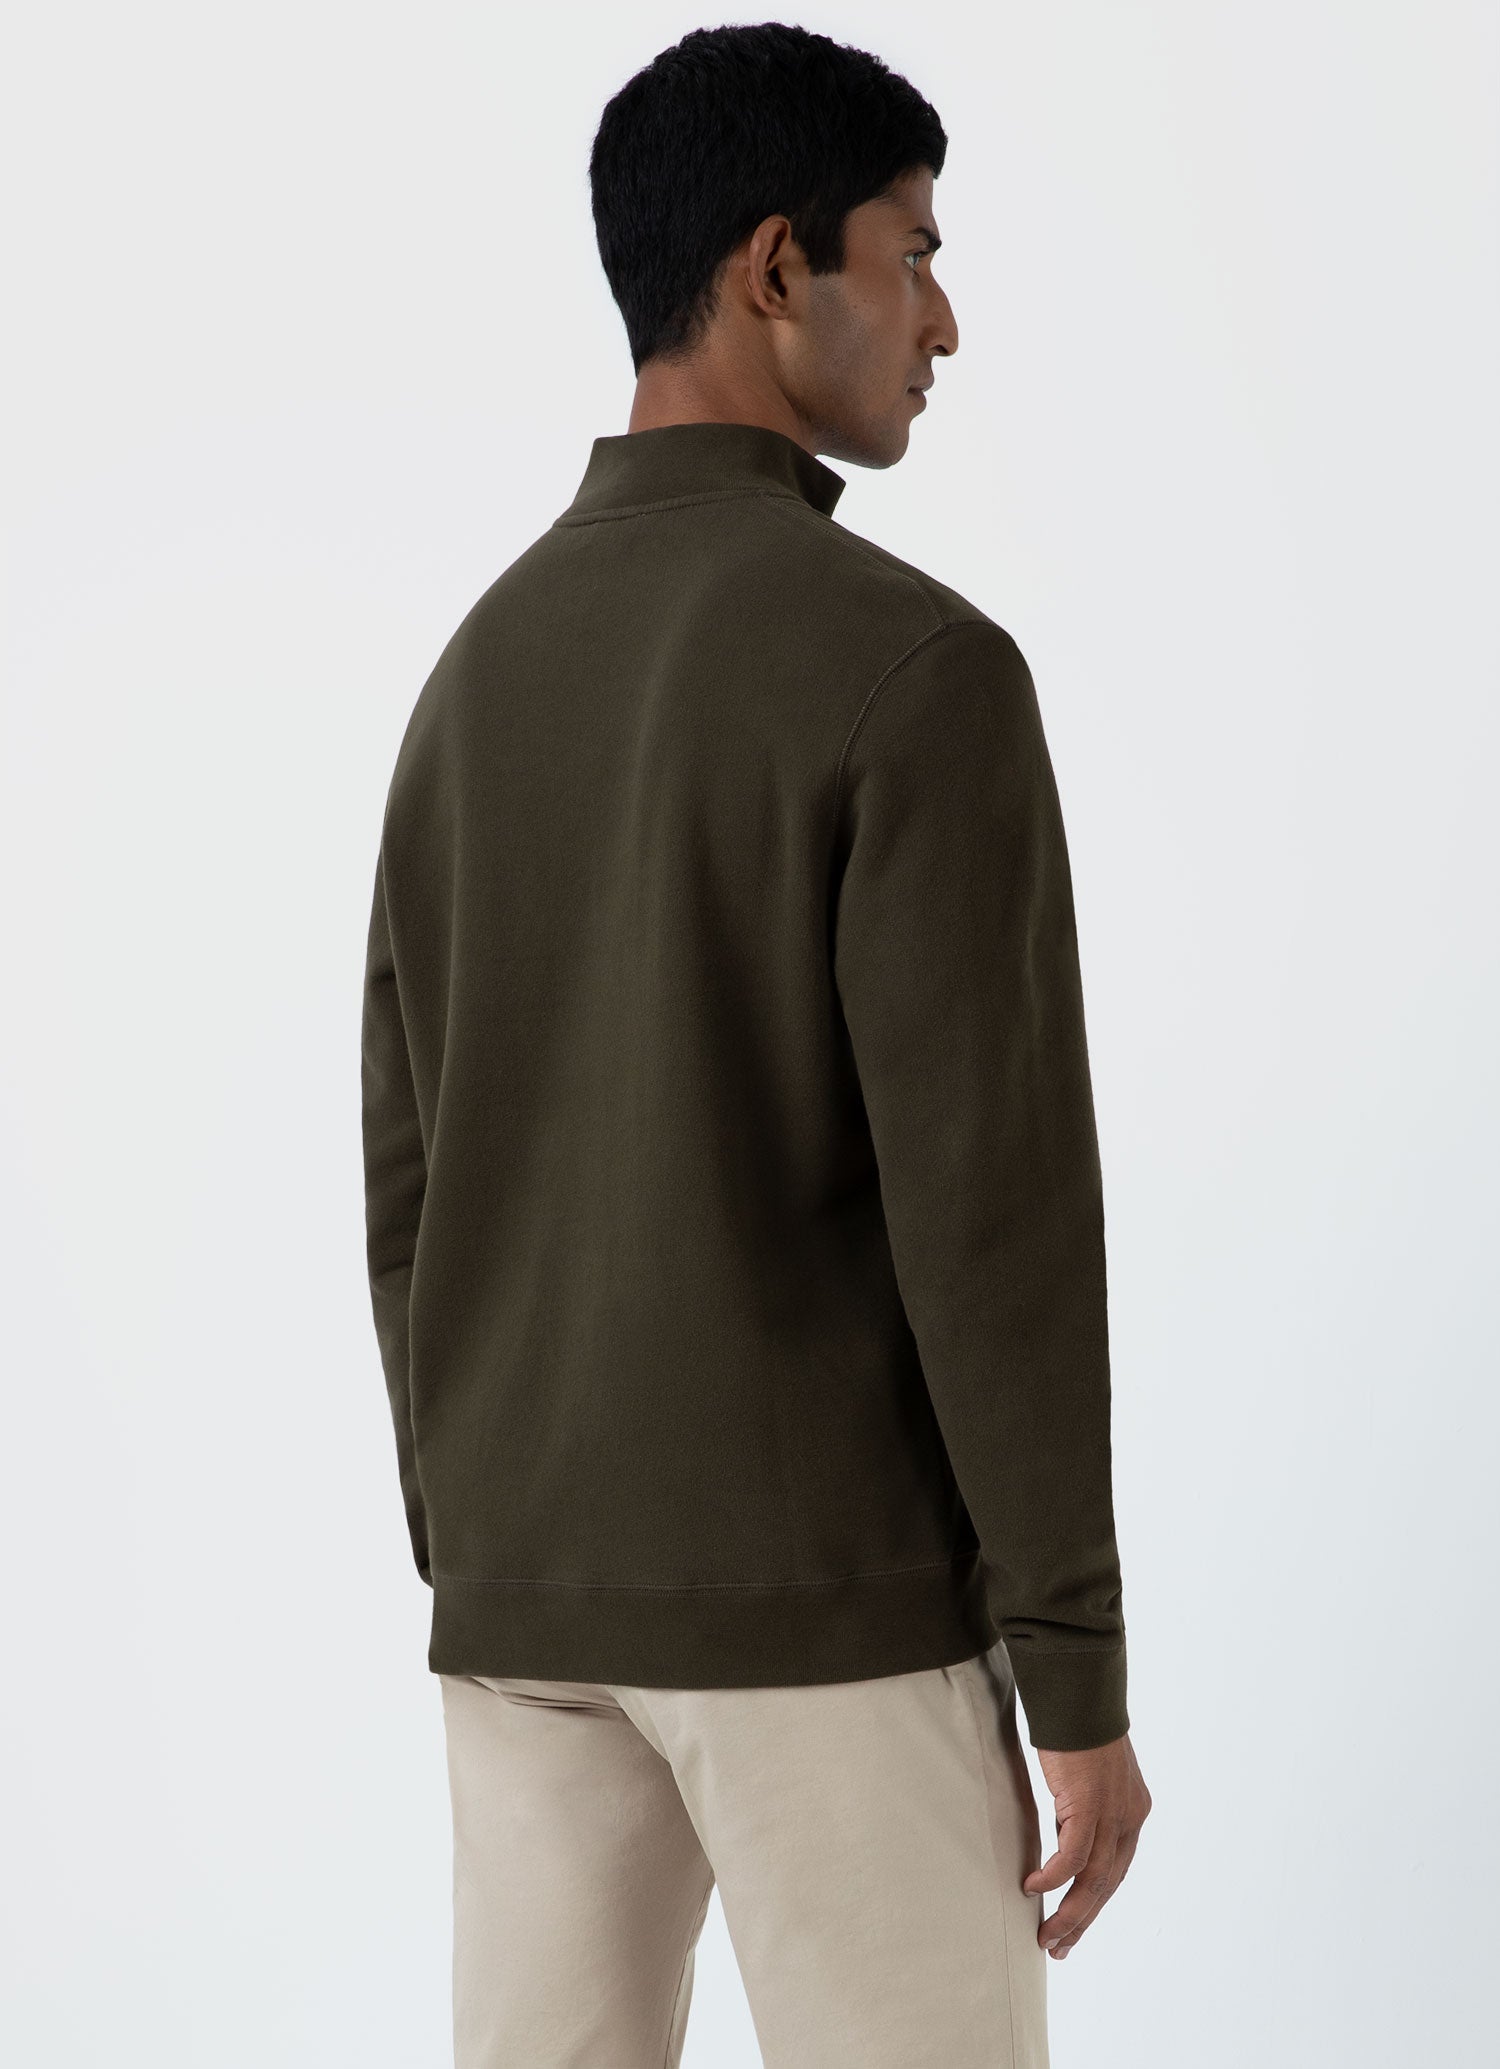 Men's Half Zip Loopback Sweatshirt in Dark Olive